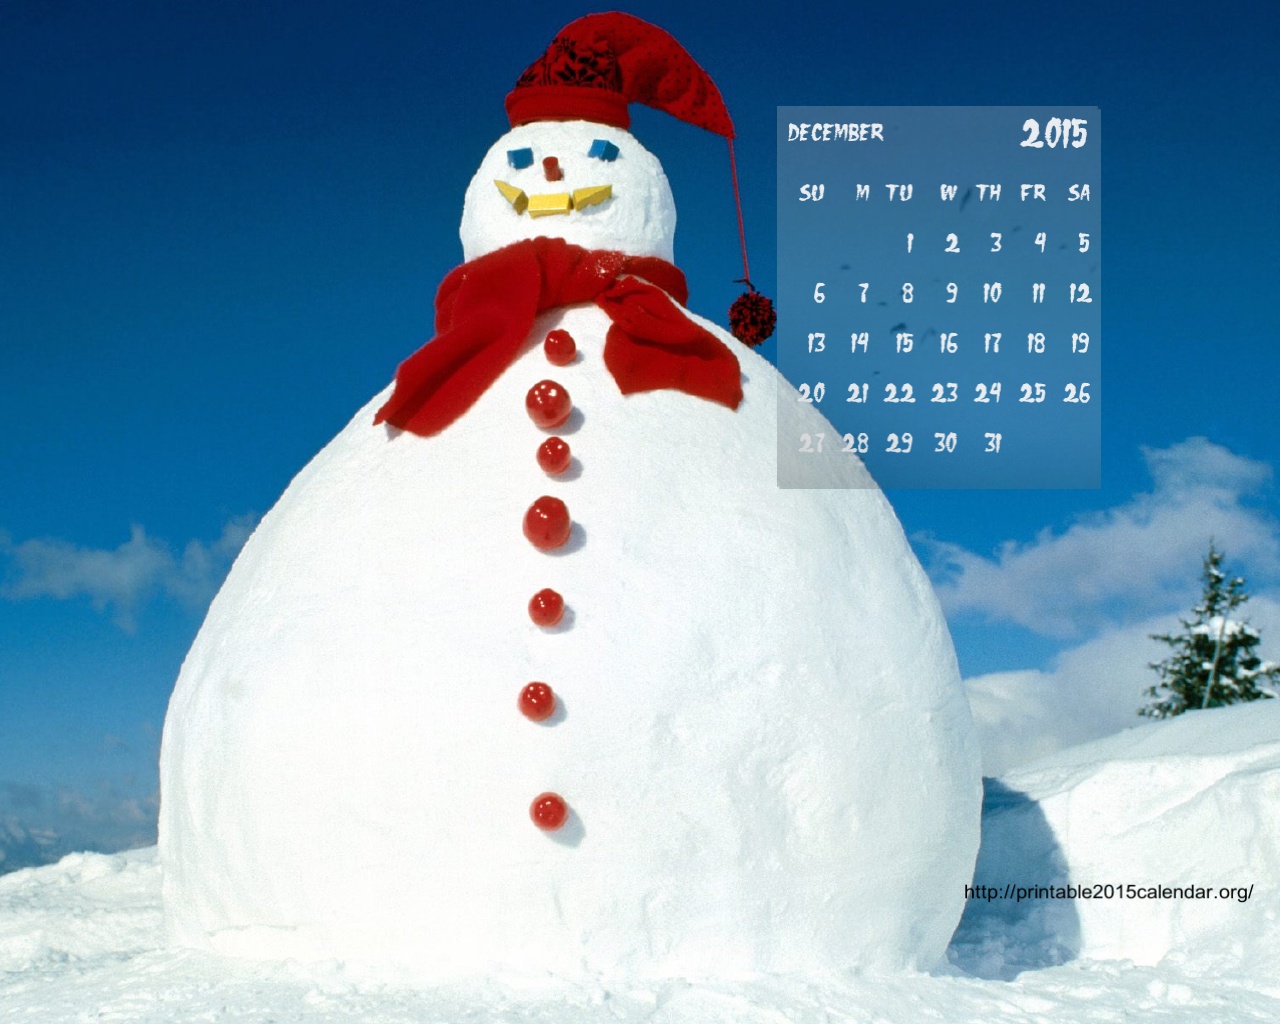 Free 2015 Monthly Calendar Wallpaper 2015 Calendar